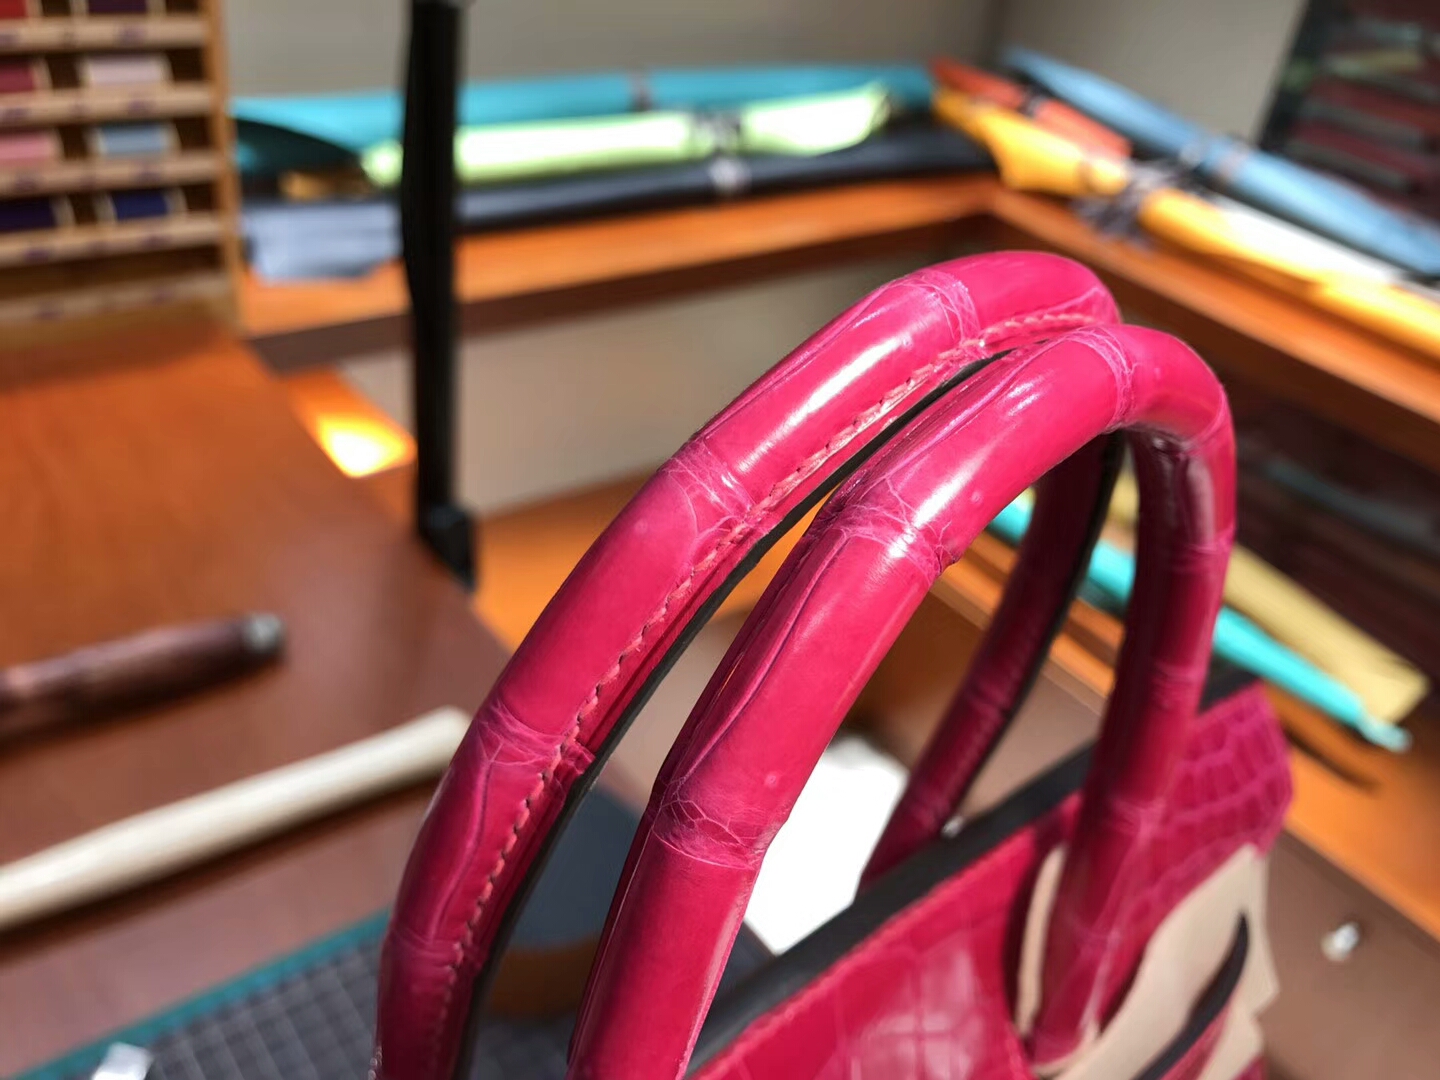 爱马仕 HERMES 铂金包 Birkin 25cm 配全套专柜原版包装 全球发售 鳄鱼 J5 天方夜谭粉紫 Scheherazade